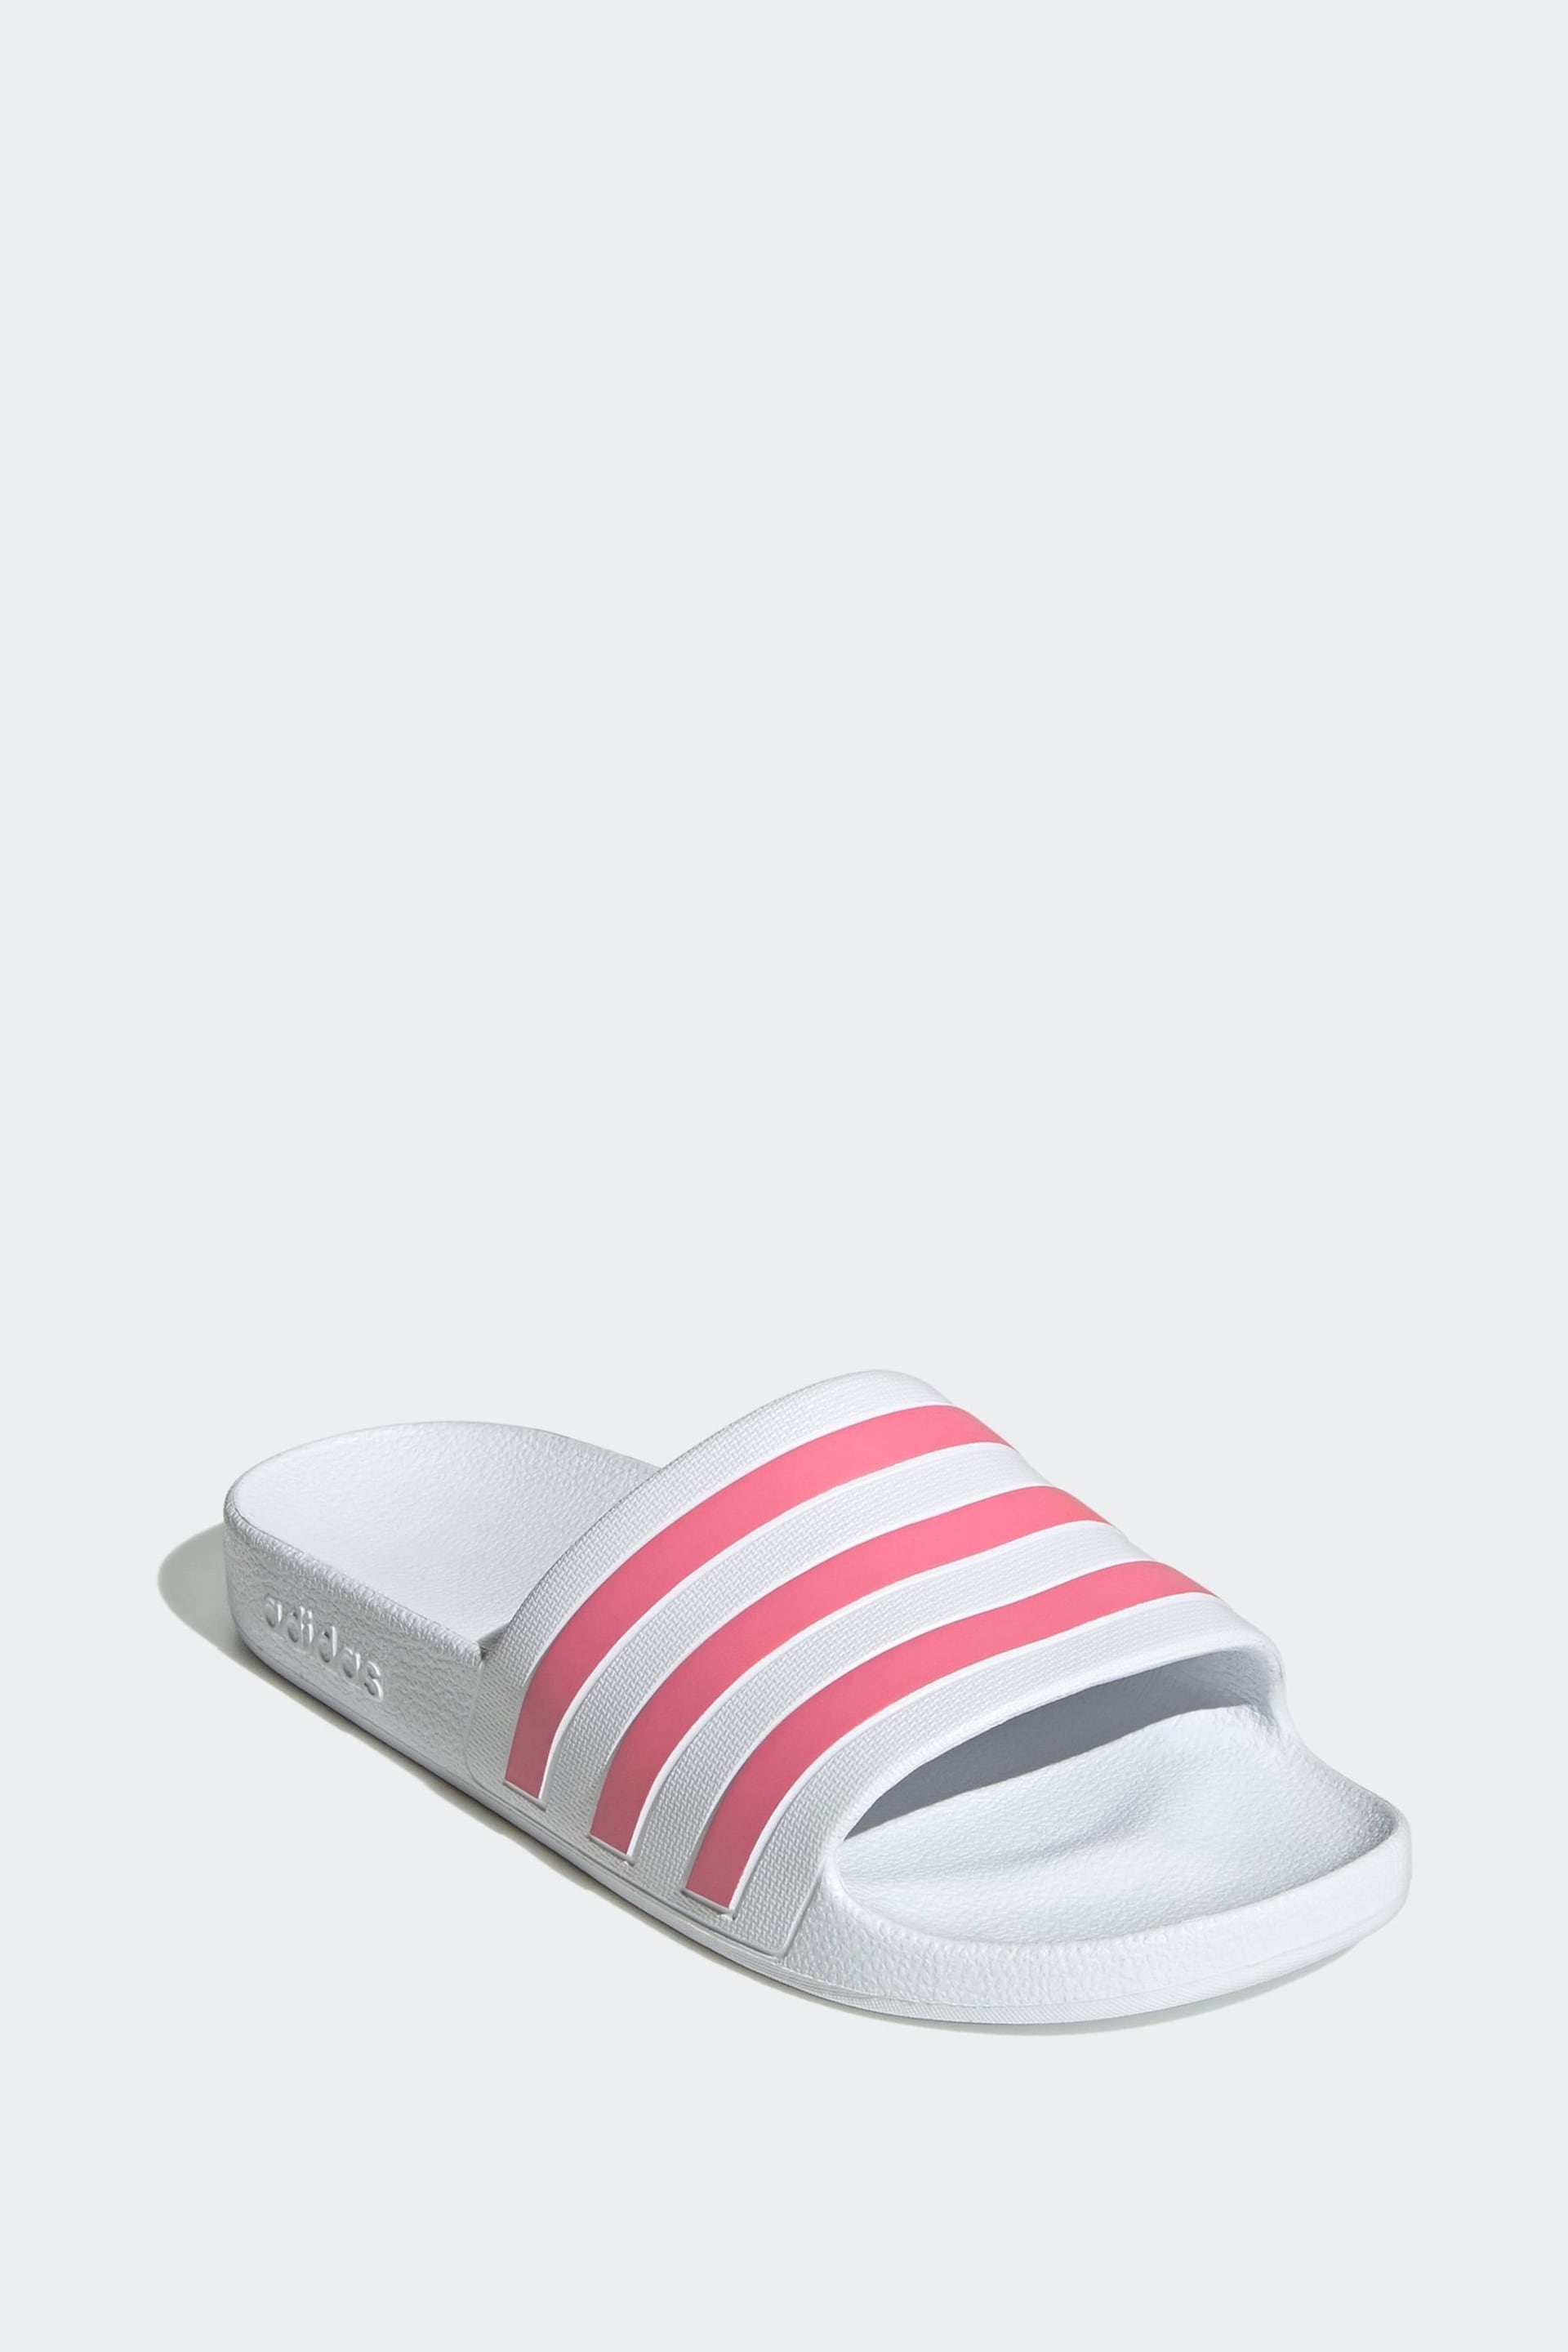 adidas White Adilette Aqua Sliders - Image 3 of 9